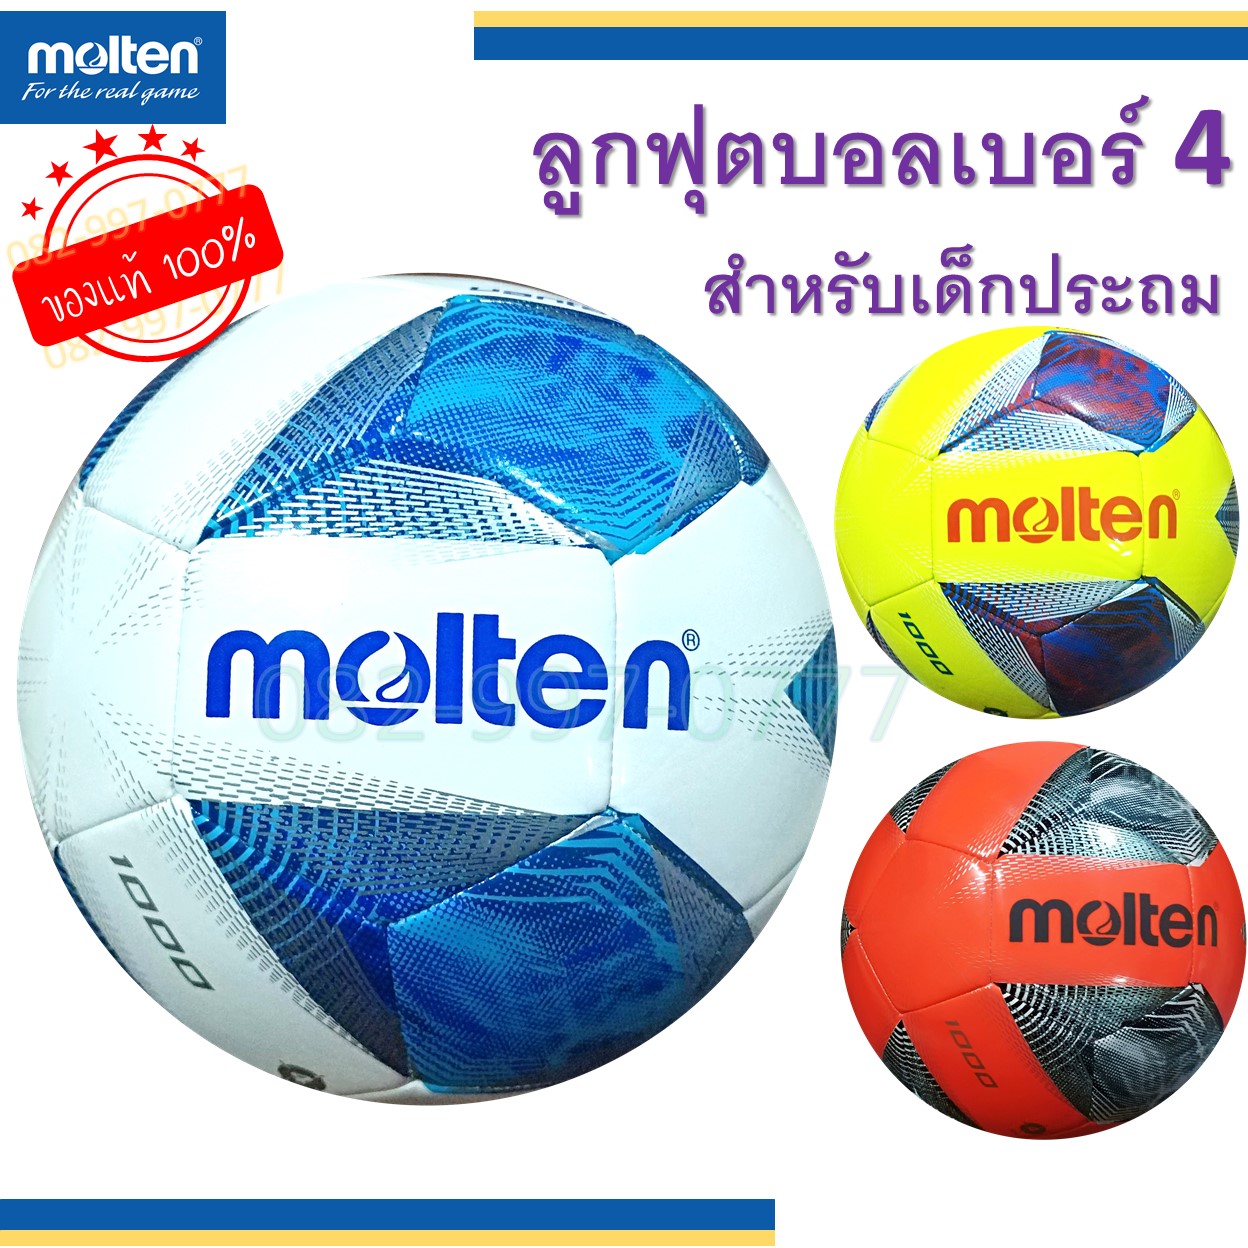 ลูกฟุตบอล เบอร์ 4 มอลเท่น แท้ 100% หนังเย็บ TPU Molten รุ่น F4A1000 ฟุตบอลเด็ก หลากสี สีสวย สีสด